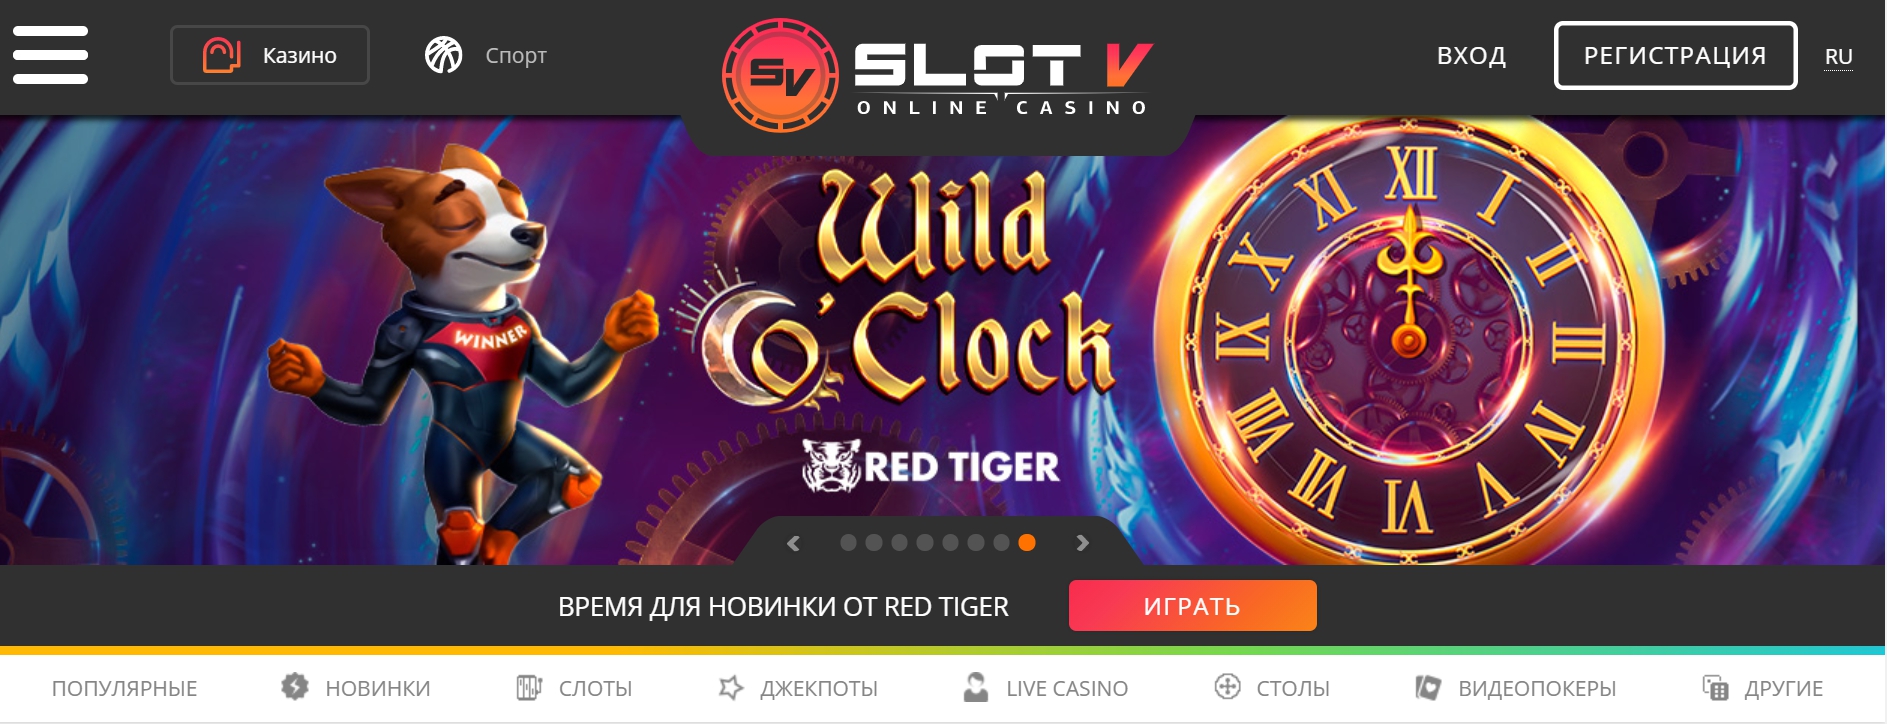 SlotV казино зеркало - Букмекерские конторы онлайн